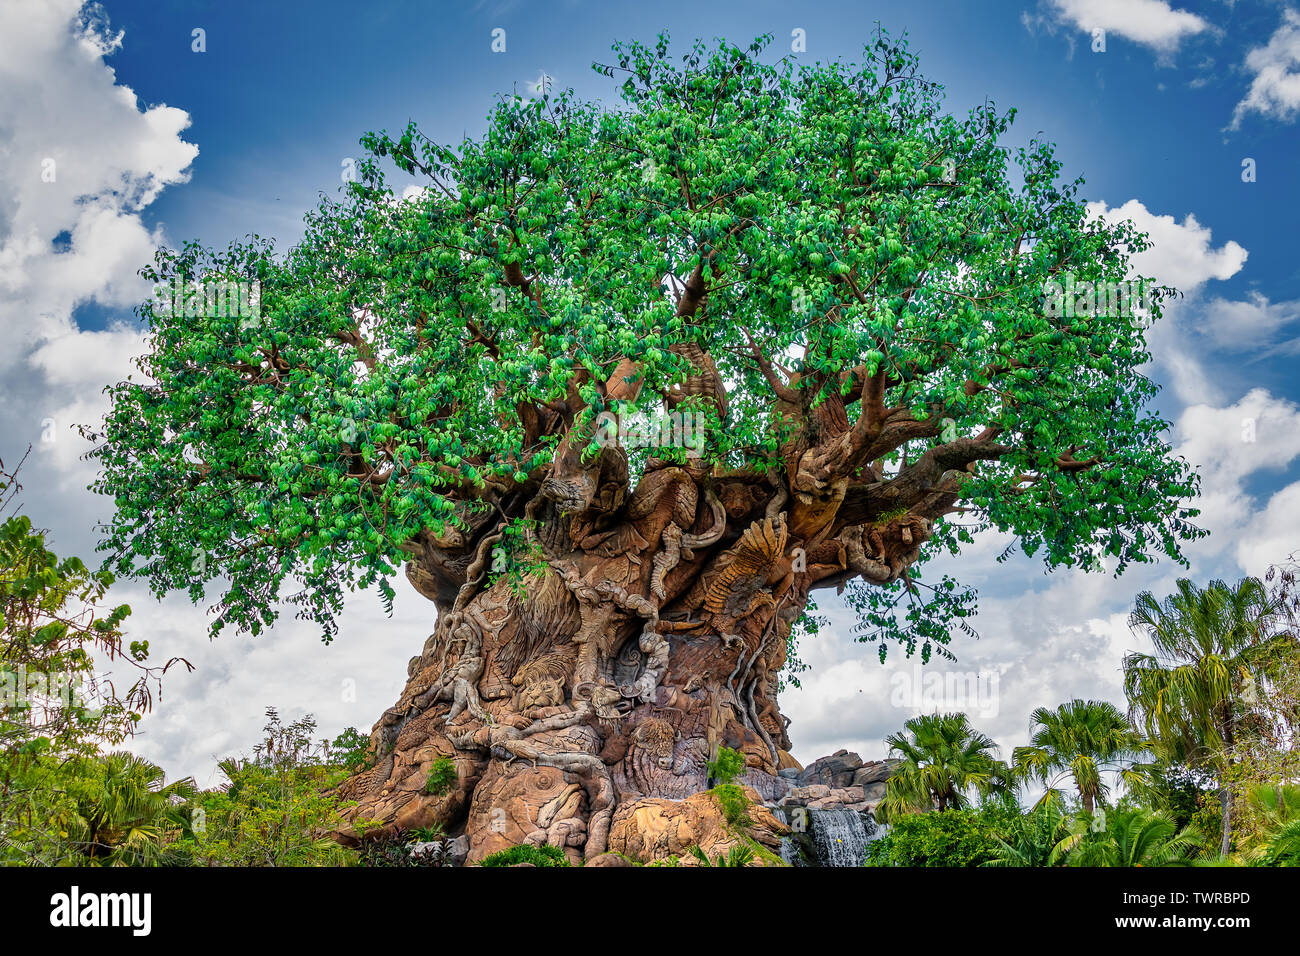 ORLANDO, Florida, EE.UU.. Mayo 03, 2019: El árbol de la vida en el Reino Animal de Disney Foto de stock